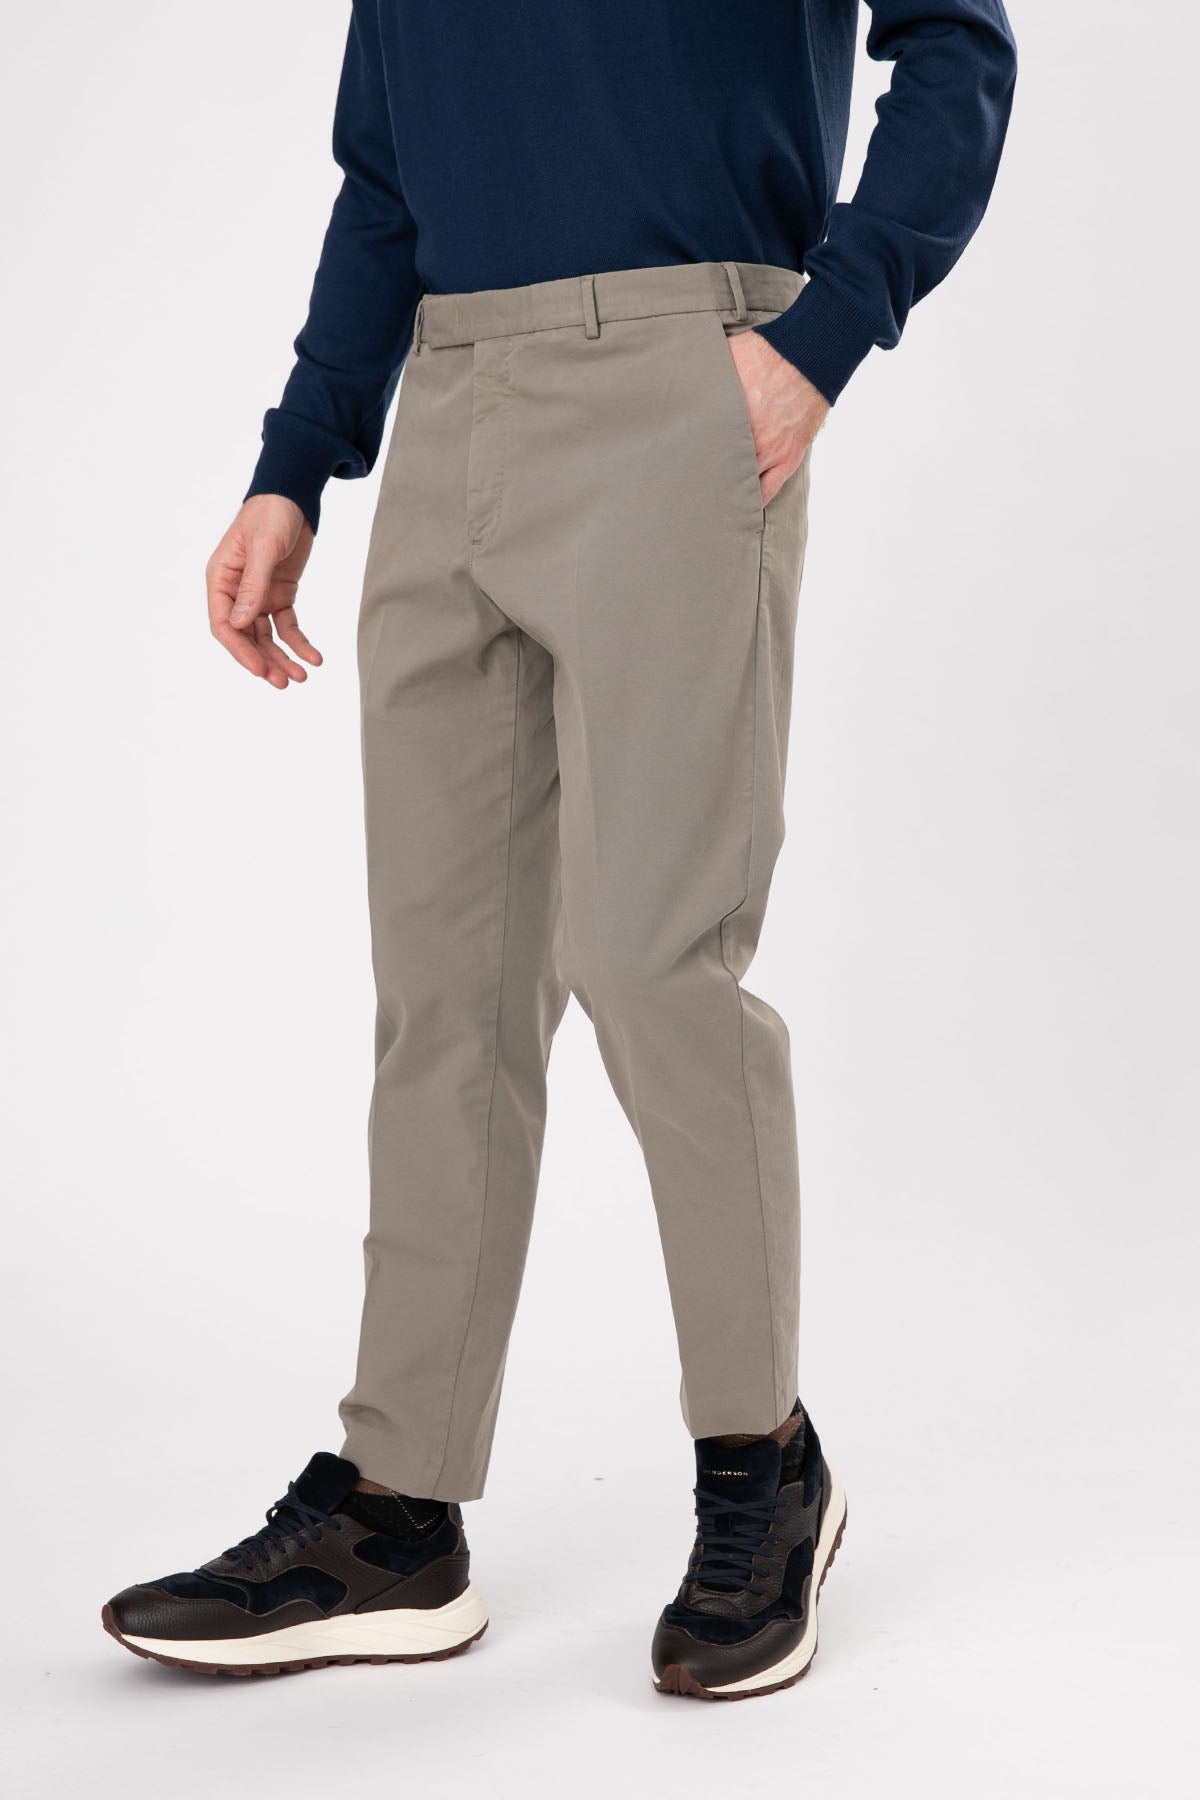 Pantaloni Torino Rebel Fit Edge Yandan Cepli Pantolon-Libas Trendy Fashion Store